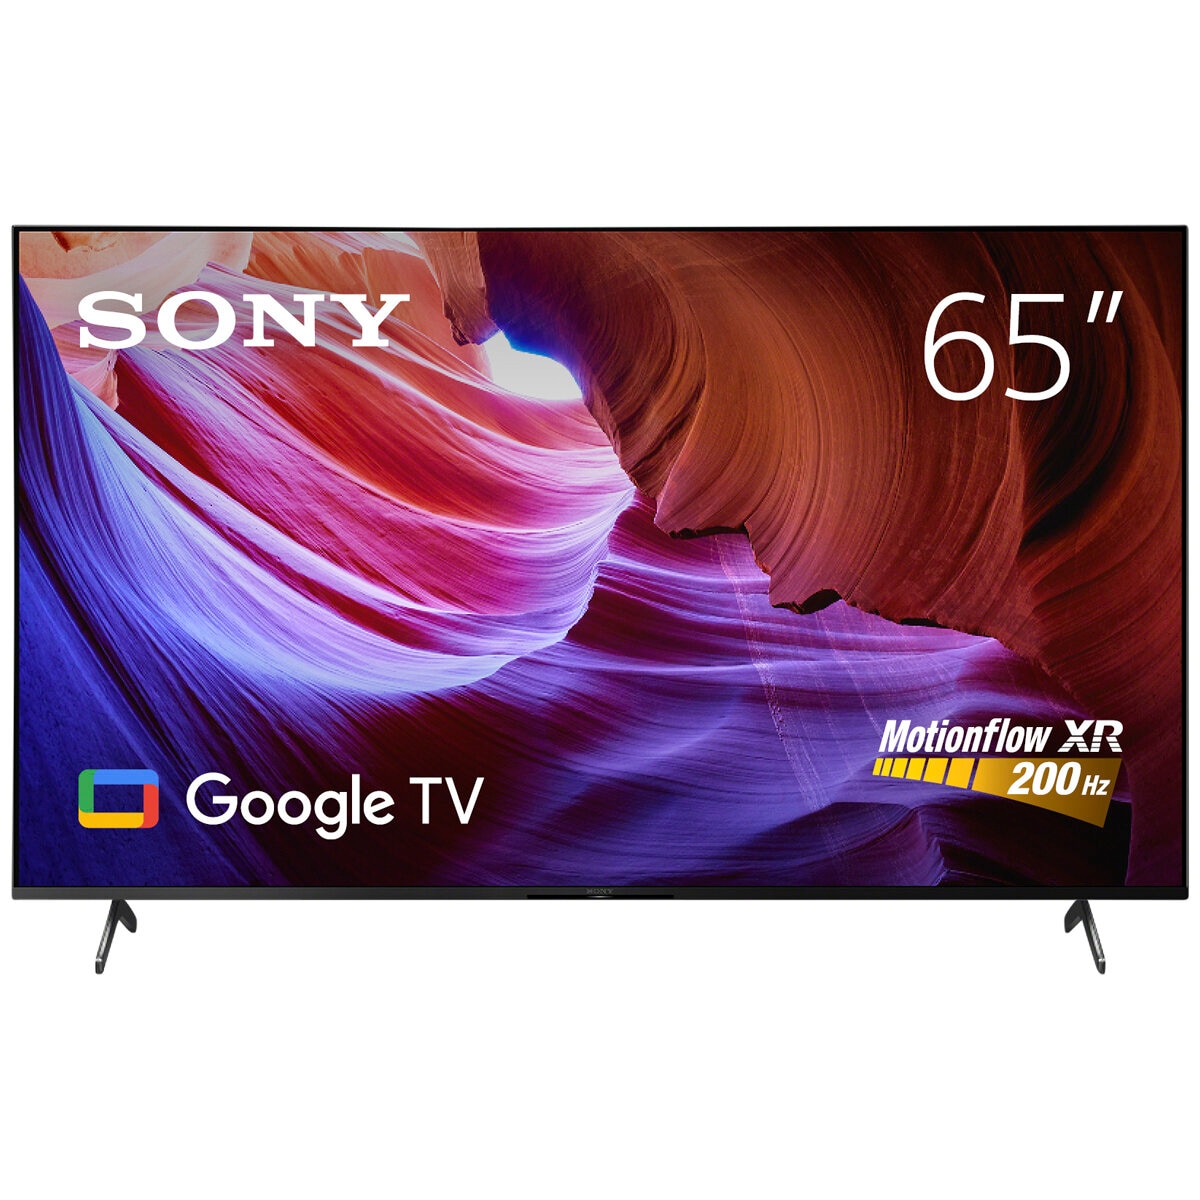 Sony 65 Inch X85K BRAVIA LED 4K UHD HDR 200Hz Google TV KD65X85K